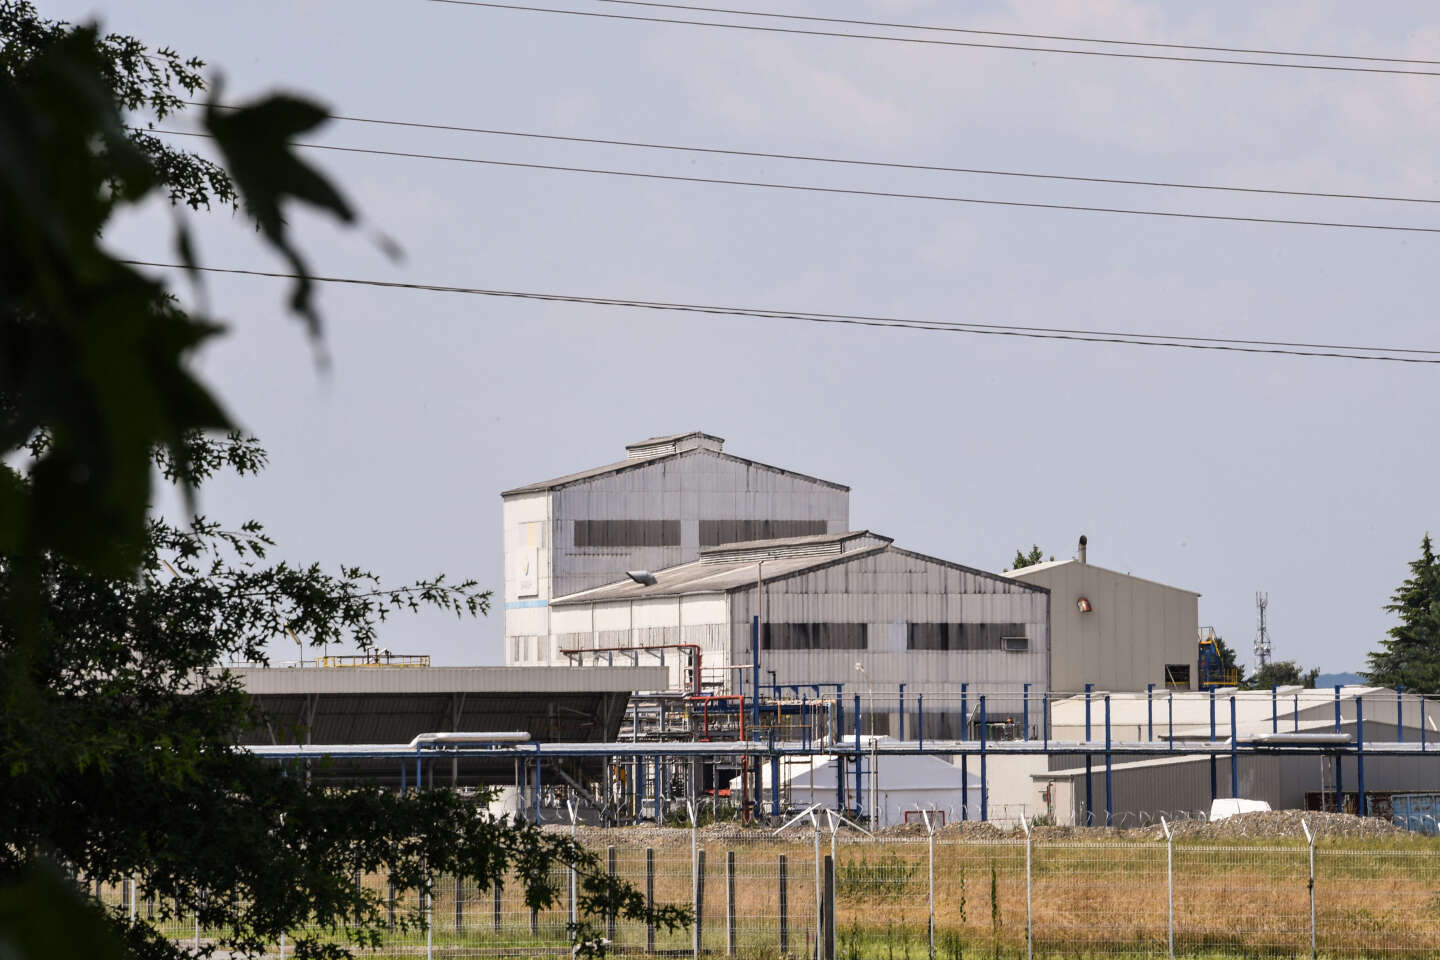 L’usine Sanofi qui produit la Dépakine encore à l’origine de rejets toxiques hors-norme